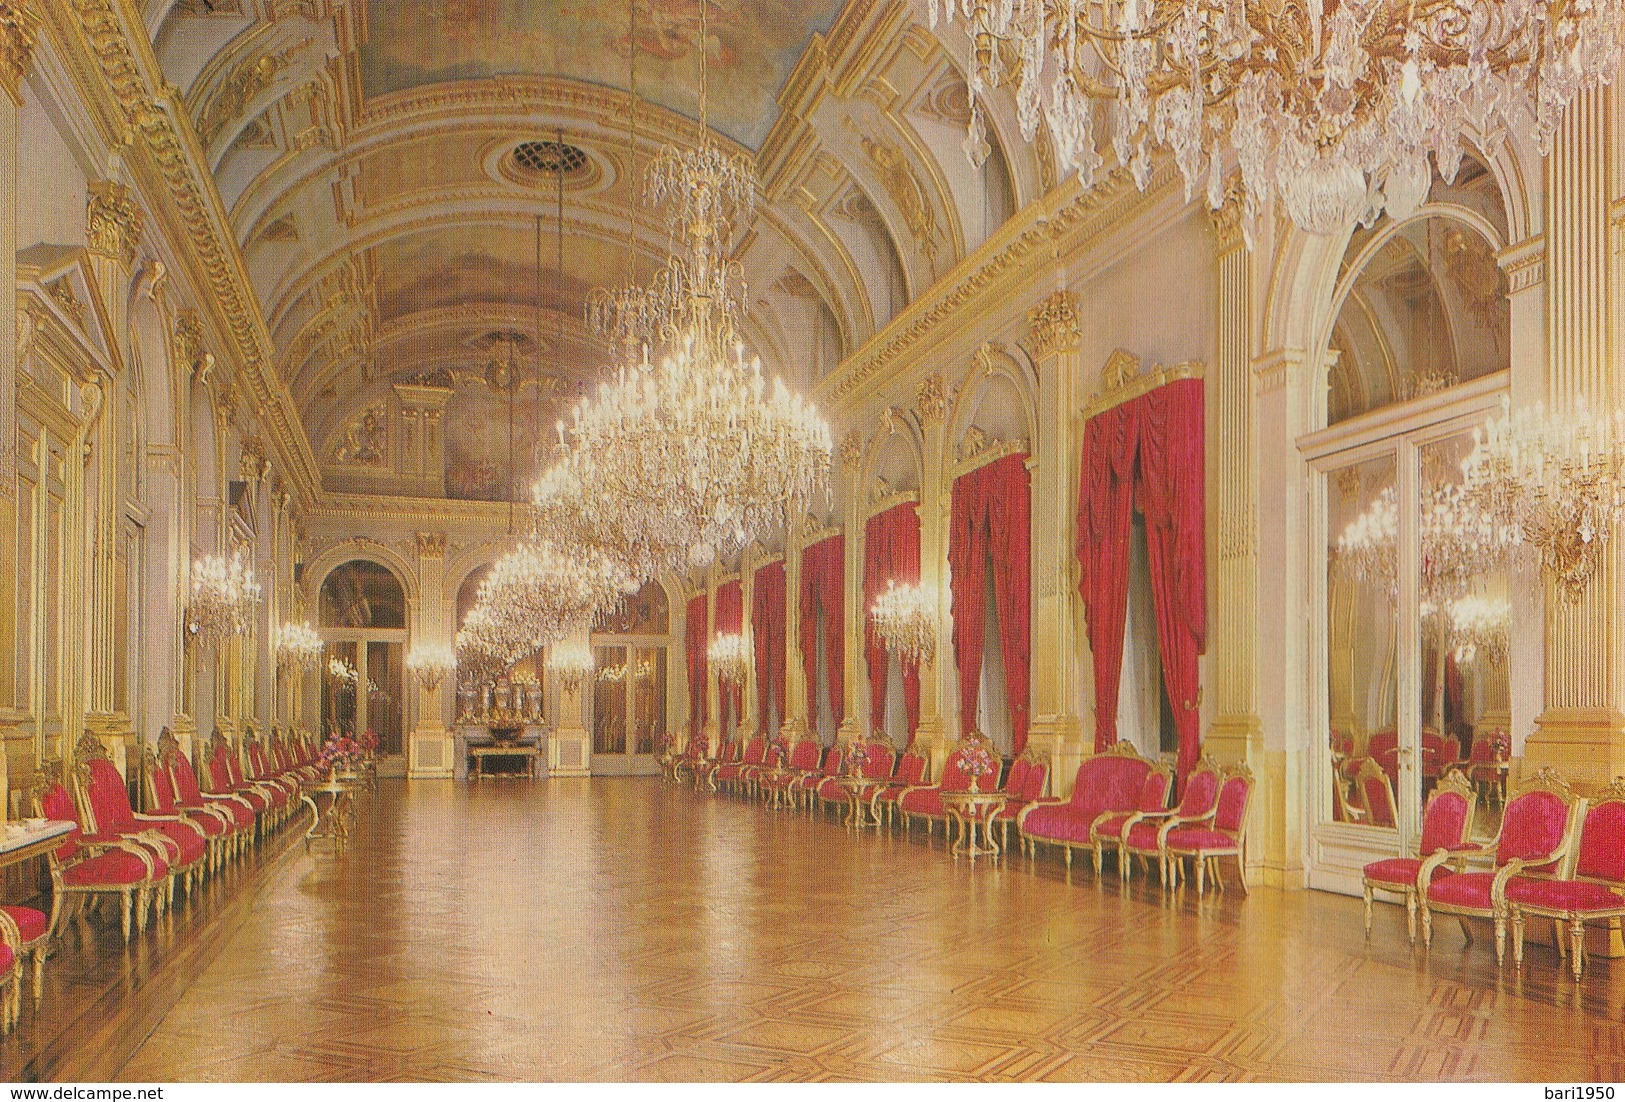 12 POSTKAART- cartoline formato grande del Palazzo Reale di Bruxelles